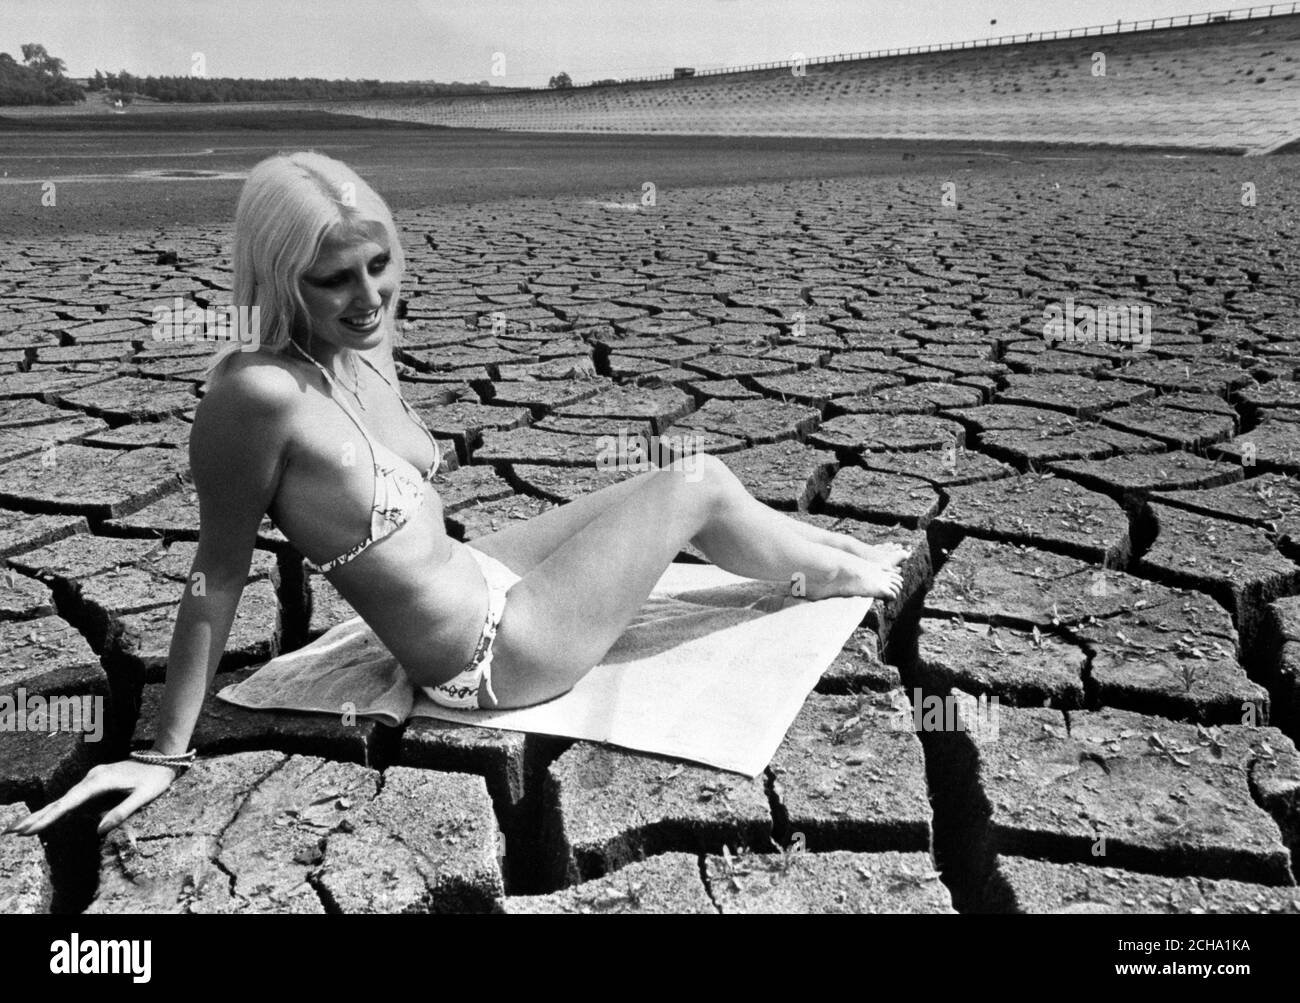 Gerben selbst in der Dürre, die Wasser-Versorgung Probleme nach Großbritannien gebracht hat, ist 19-jährige Modell Cerica. Sie zog einen Bikini an und genoss die Sonne im ausgetrockneten Becken des Pitsford Reservoir in Northamptonshire. Stockfoto